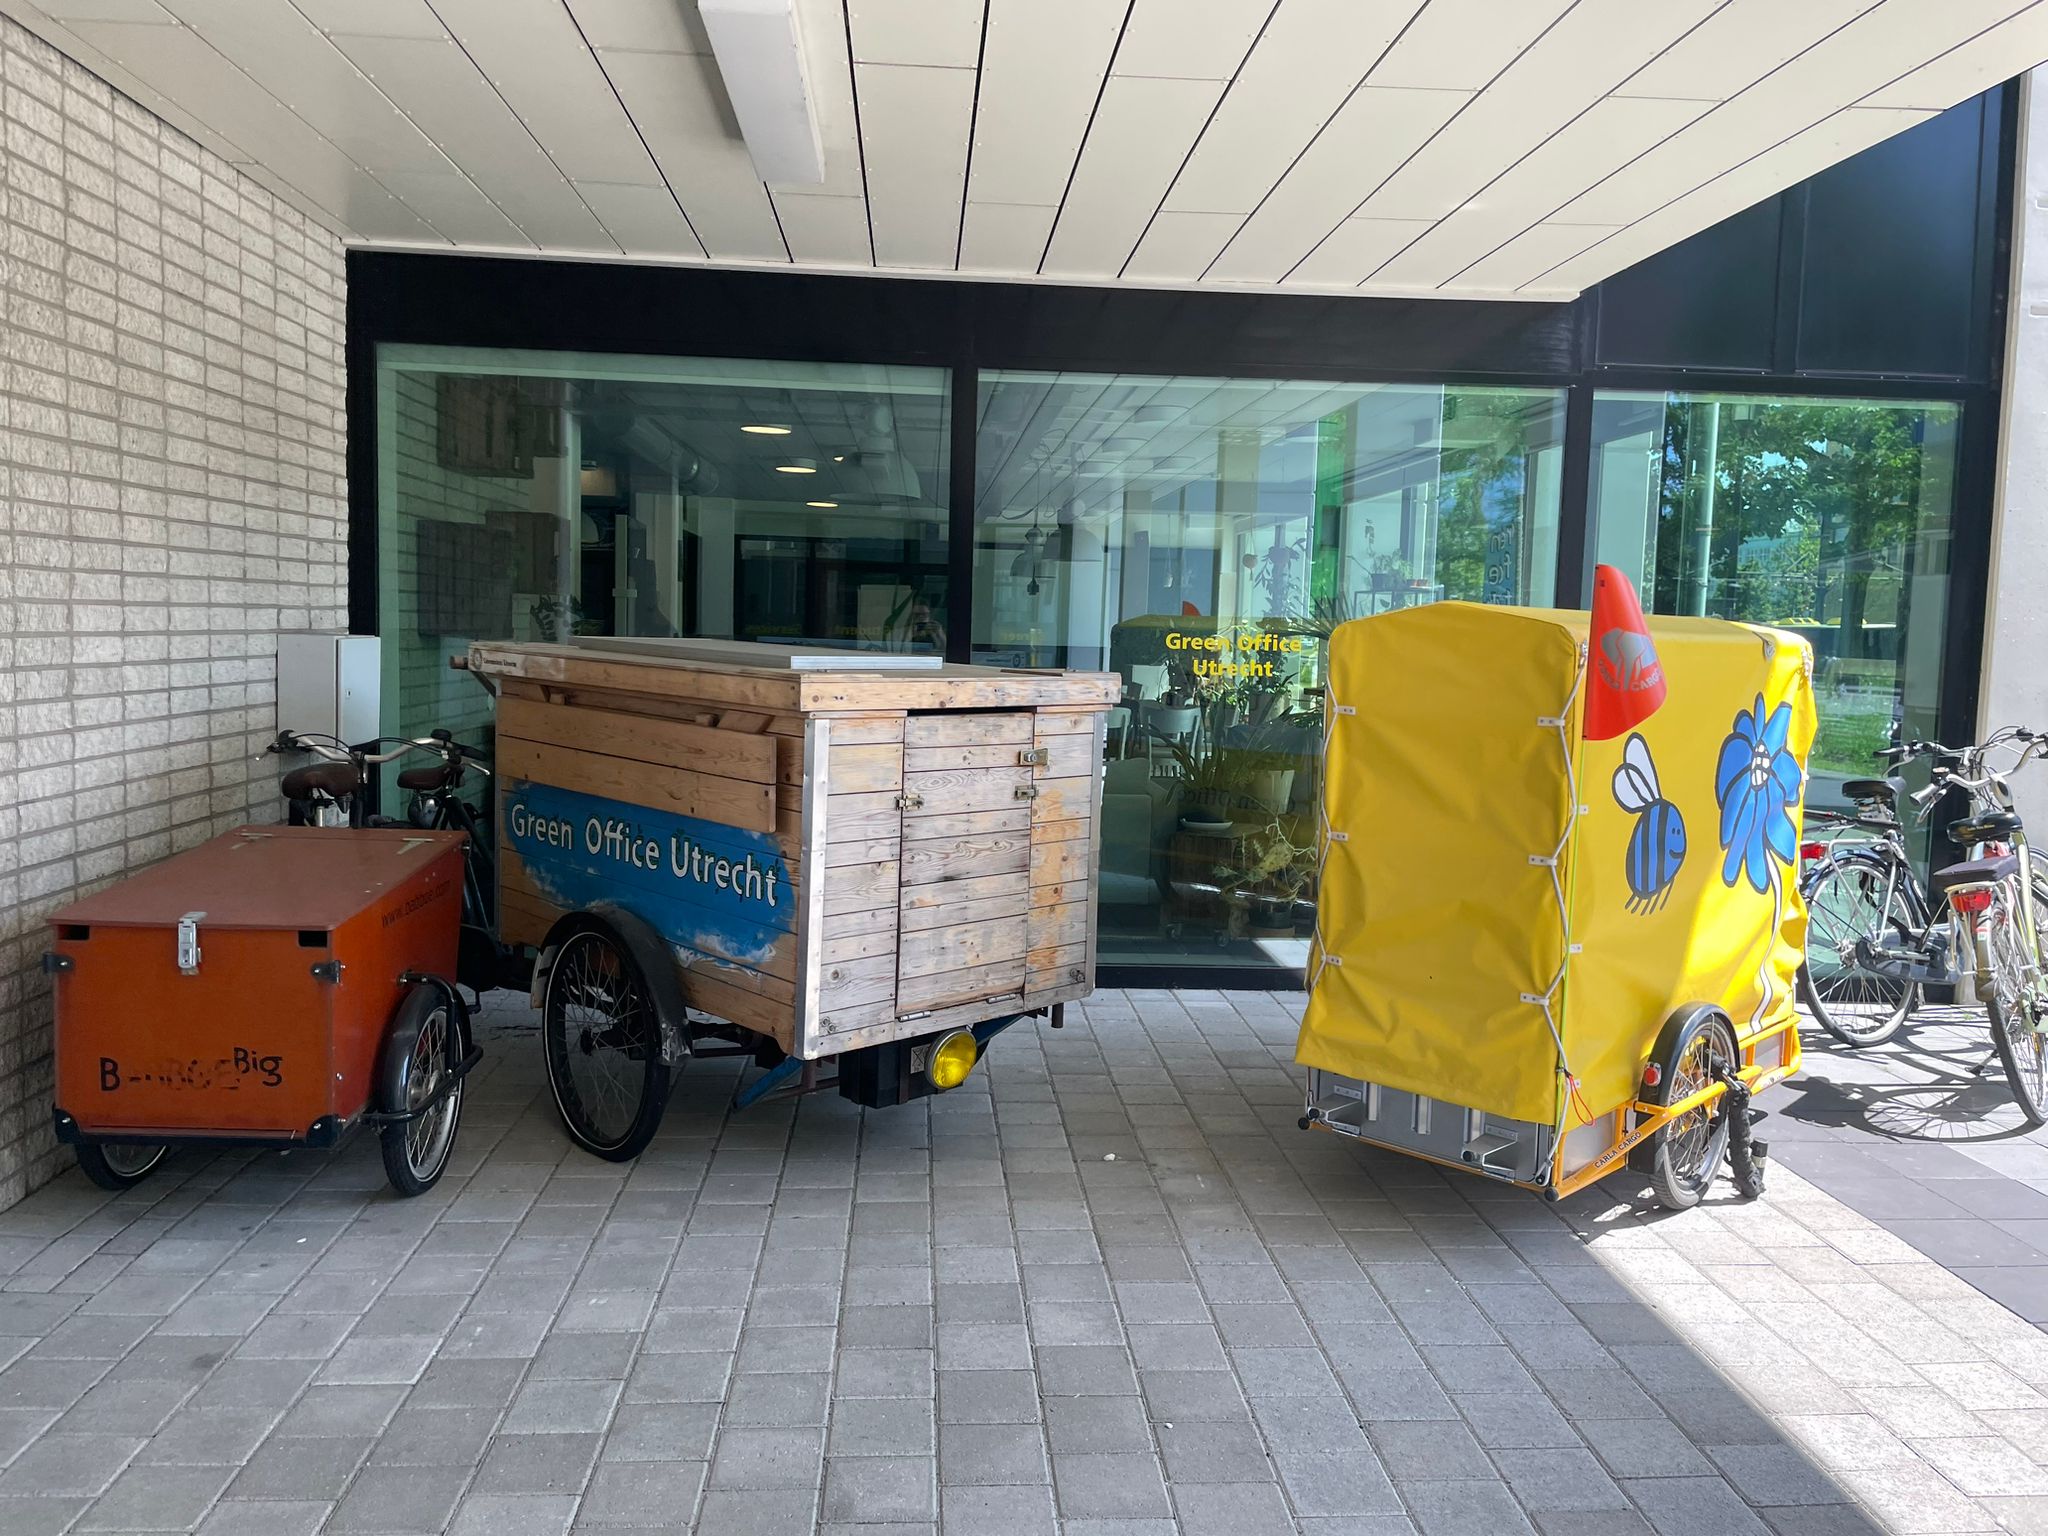 Drei unterschiedliche Lastenräder, teilweise mit sehr großen Transportboxen, stehen vor dem Green Office zur kostenlosen Ausleihe bereit